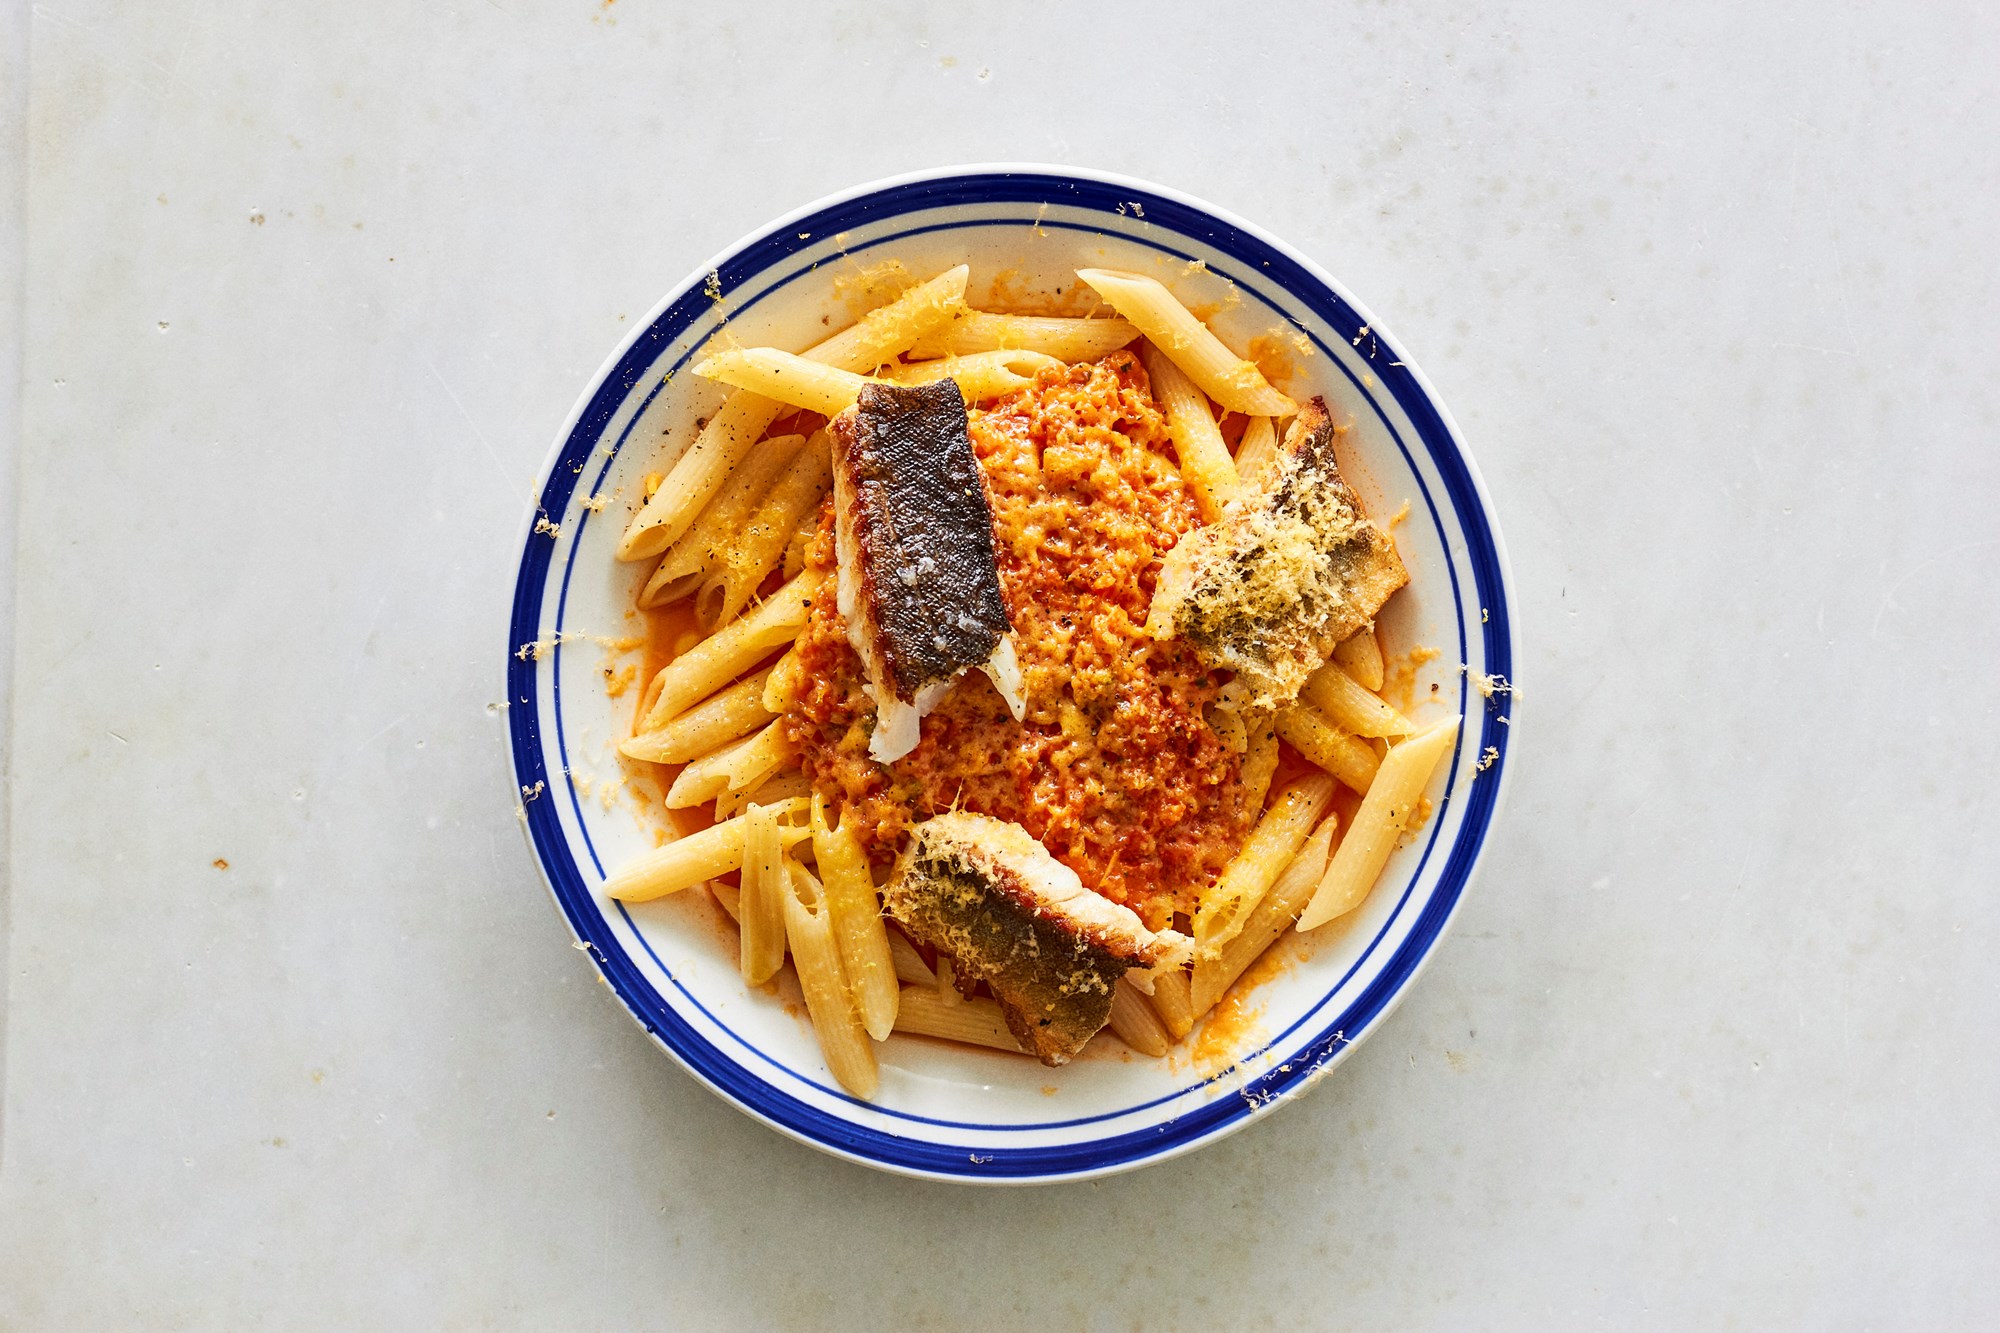 Stegt mørksej i pasta med tomatsovs, squash og røget cheddar